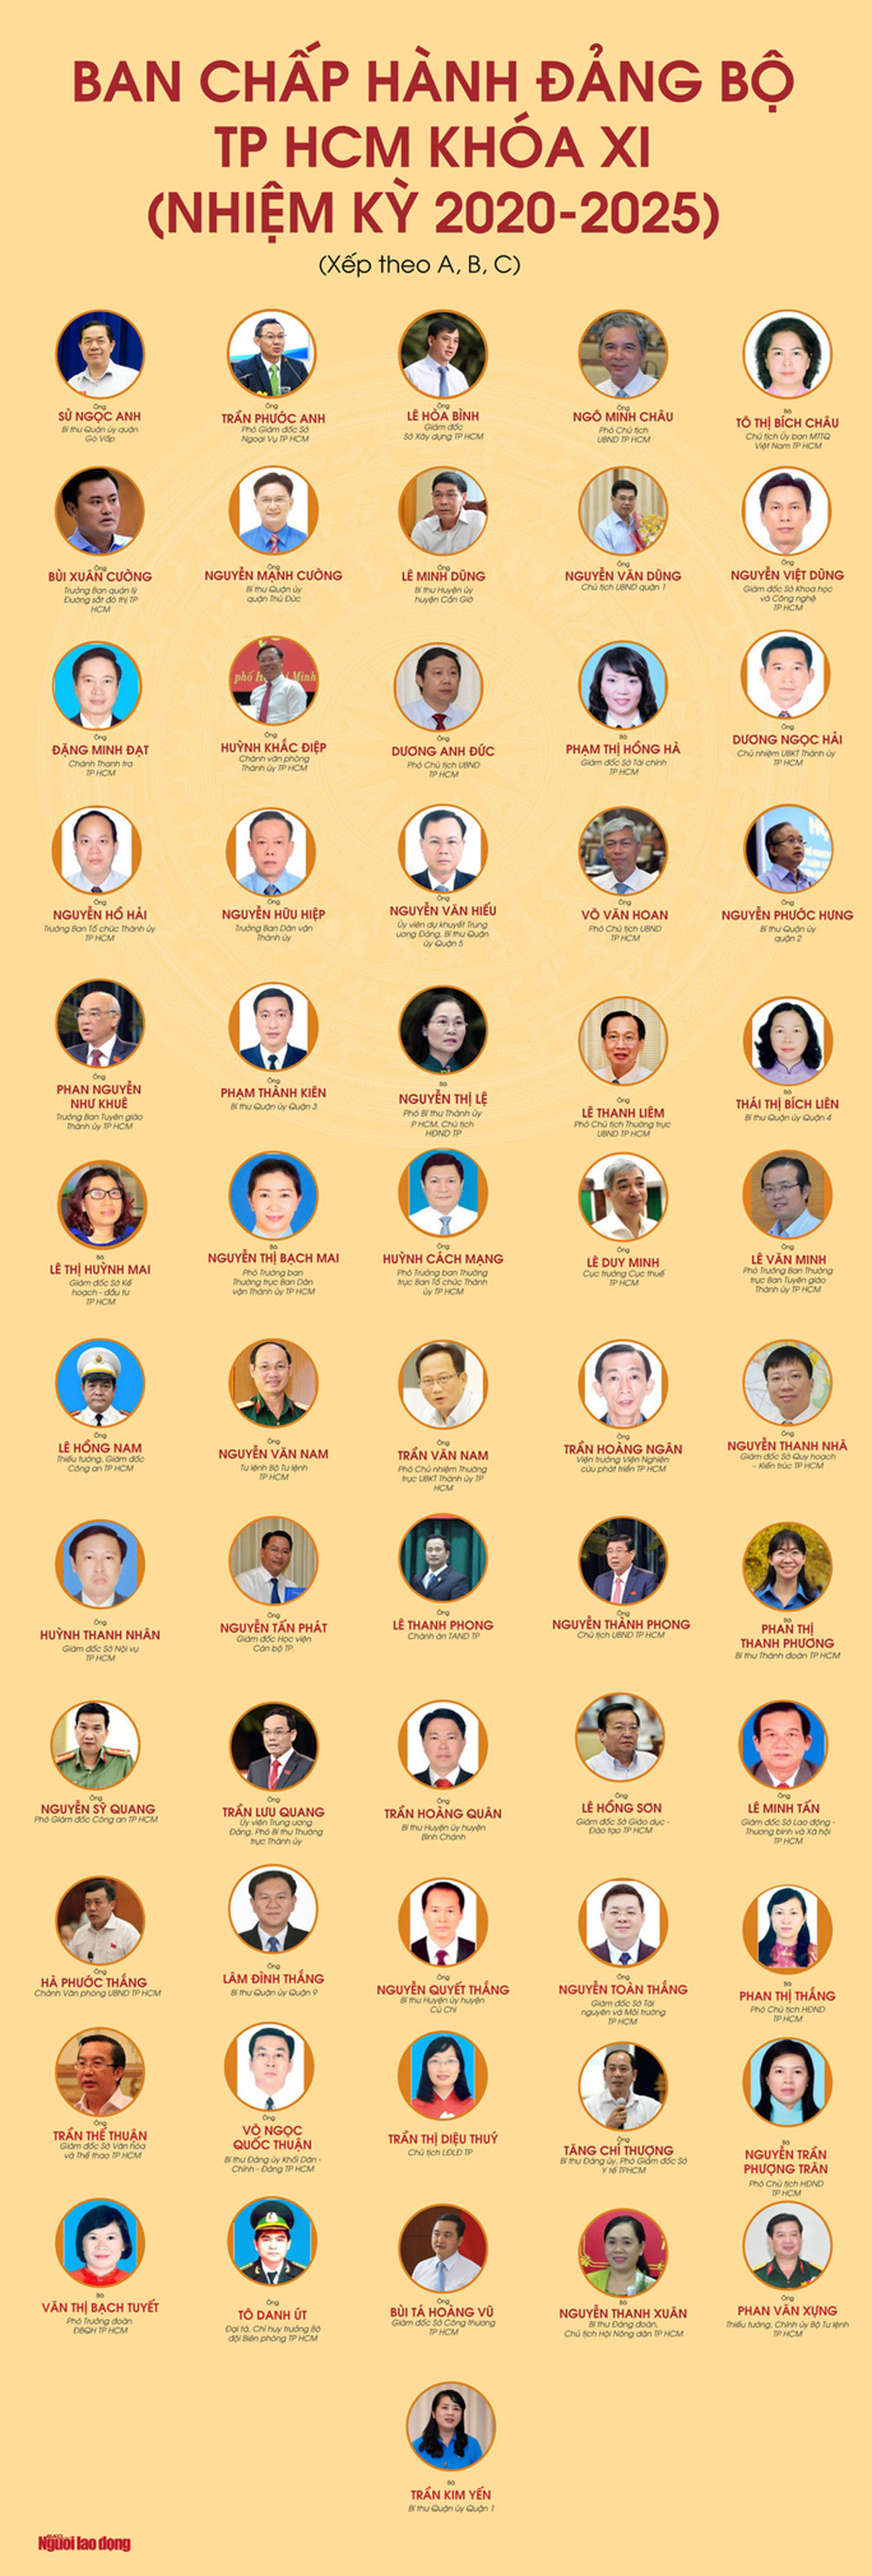 Chân dung 61 ủy viên Ban Chấp hành Đảng bộ TP HCM nhiệm kỳ 2020-2025 - 1